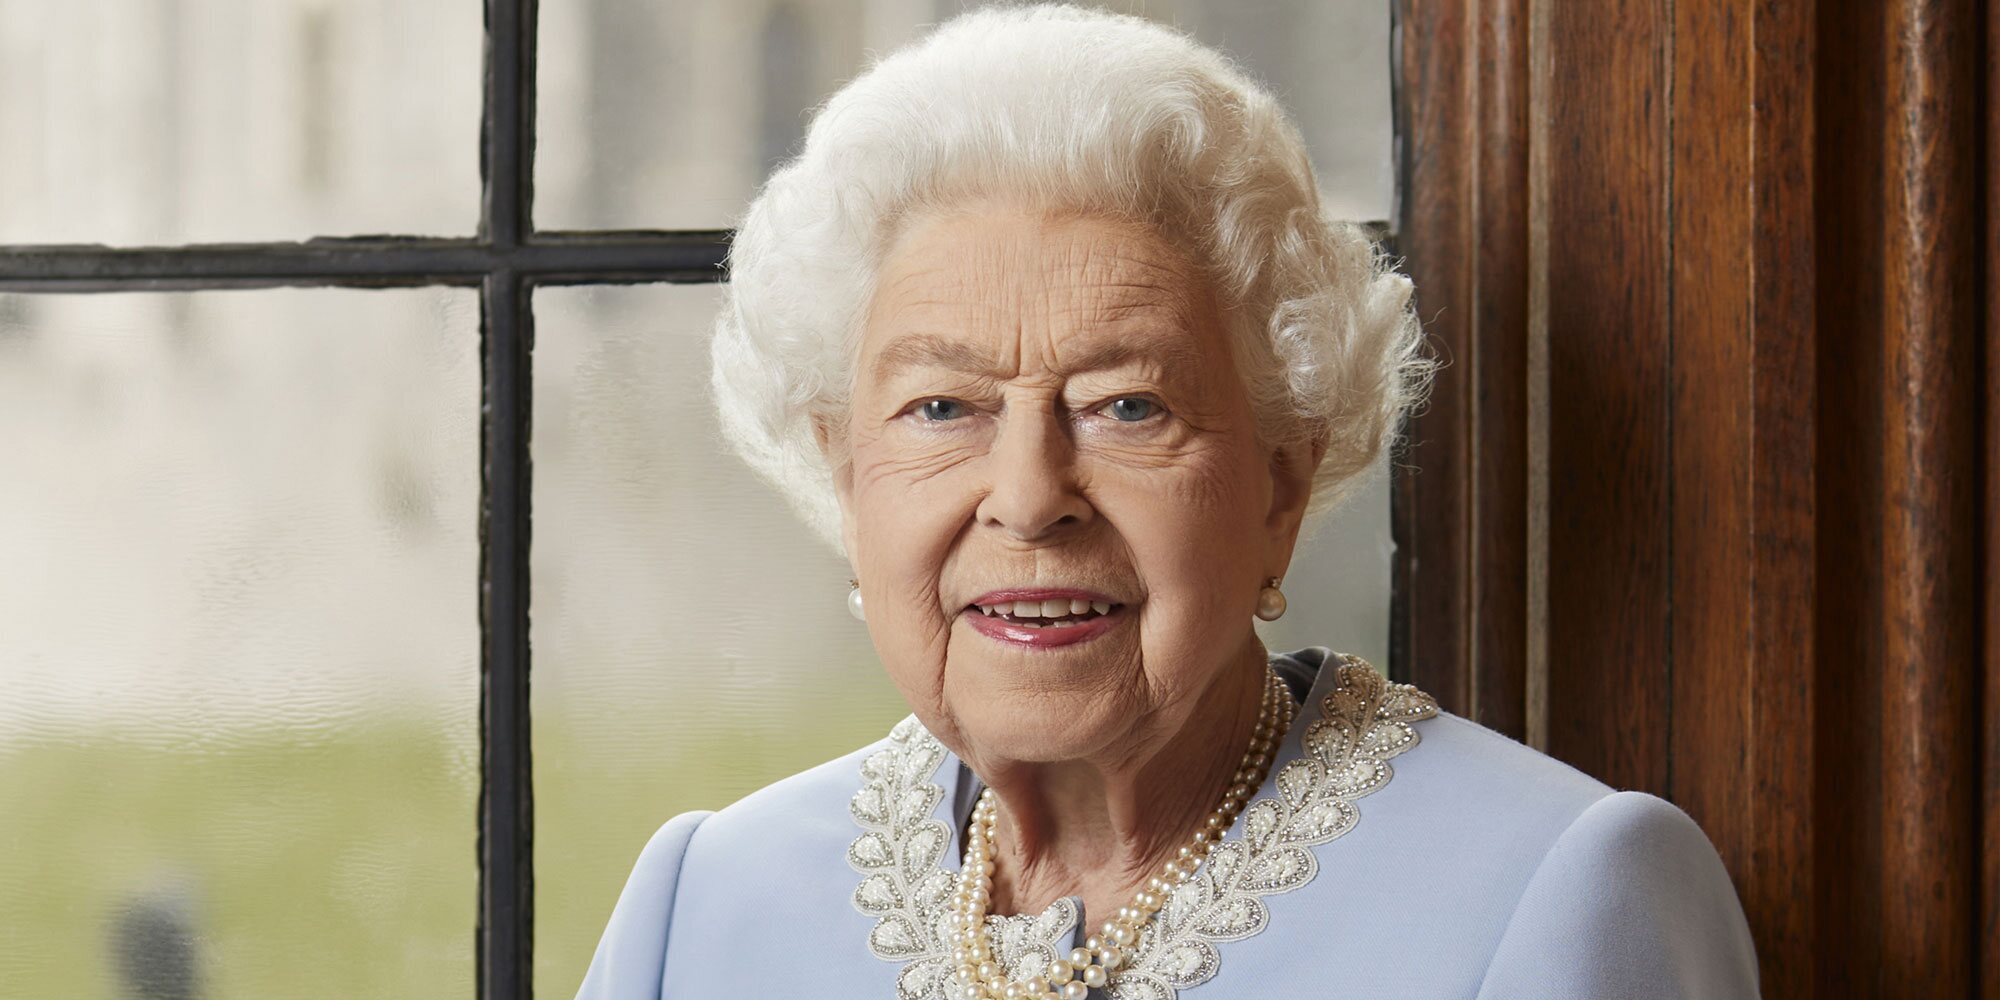 La foto oficial de la Reina Isabel II y el emotivo mensaje con los que celebra su Jubileo de Platino